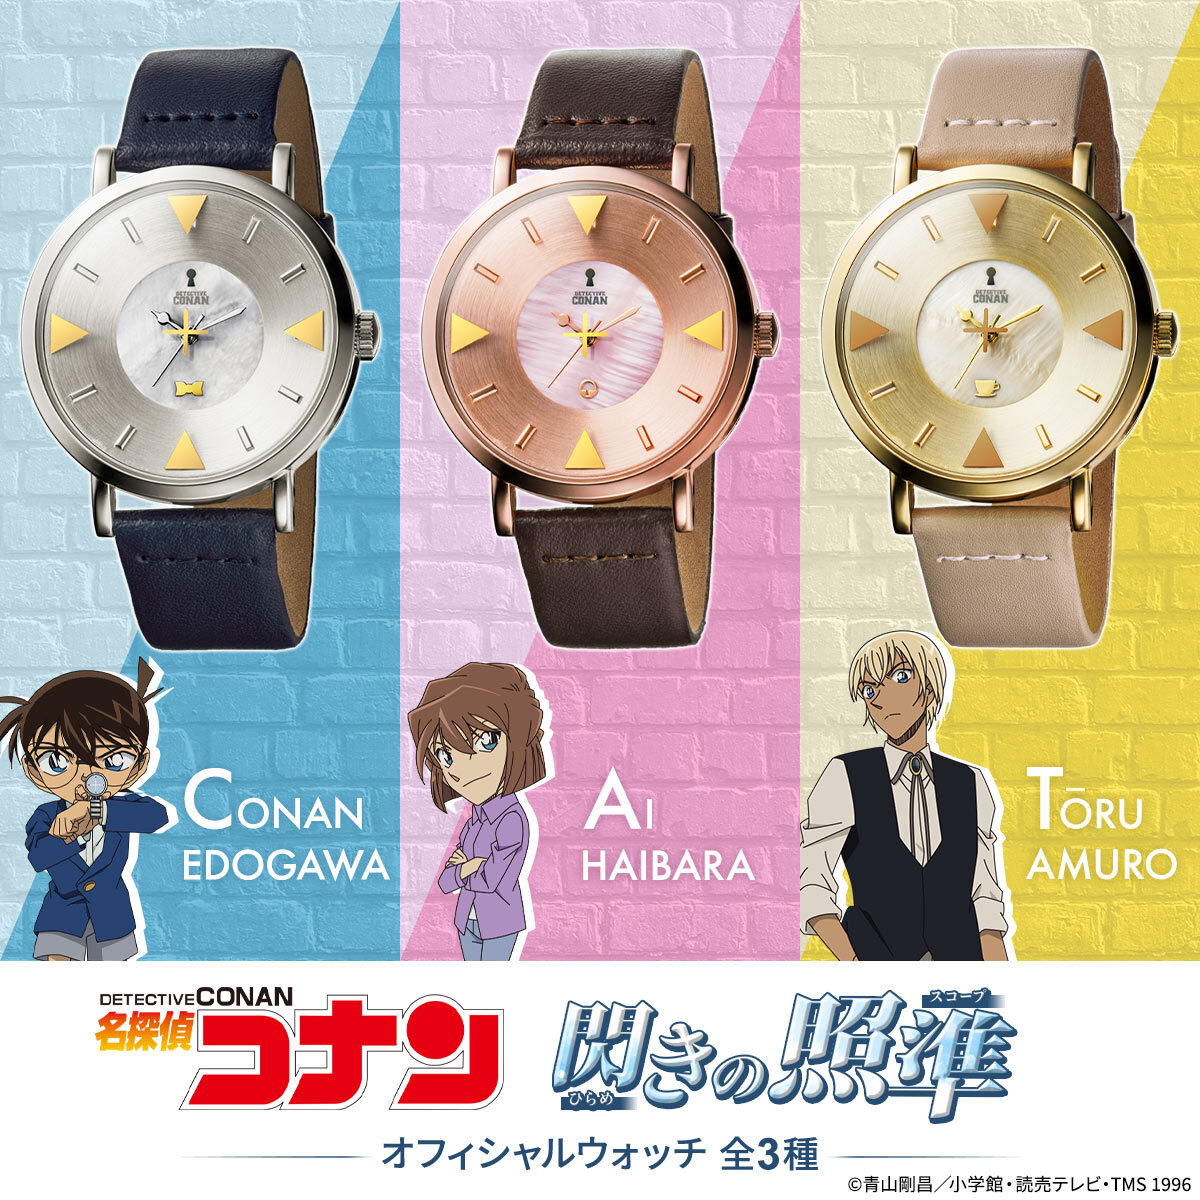 【USJ限定品】名探偵コナン腕時計型麻酔銃風腕時計